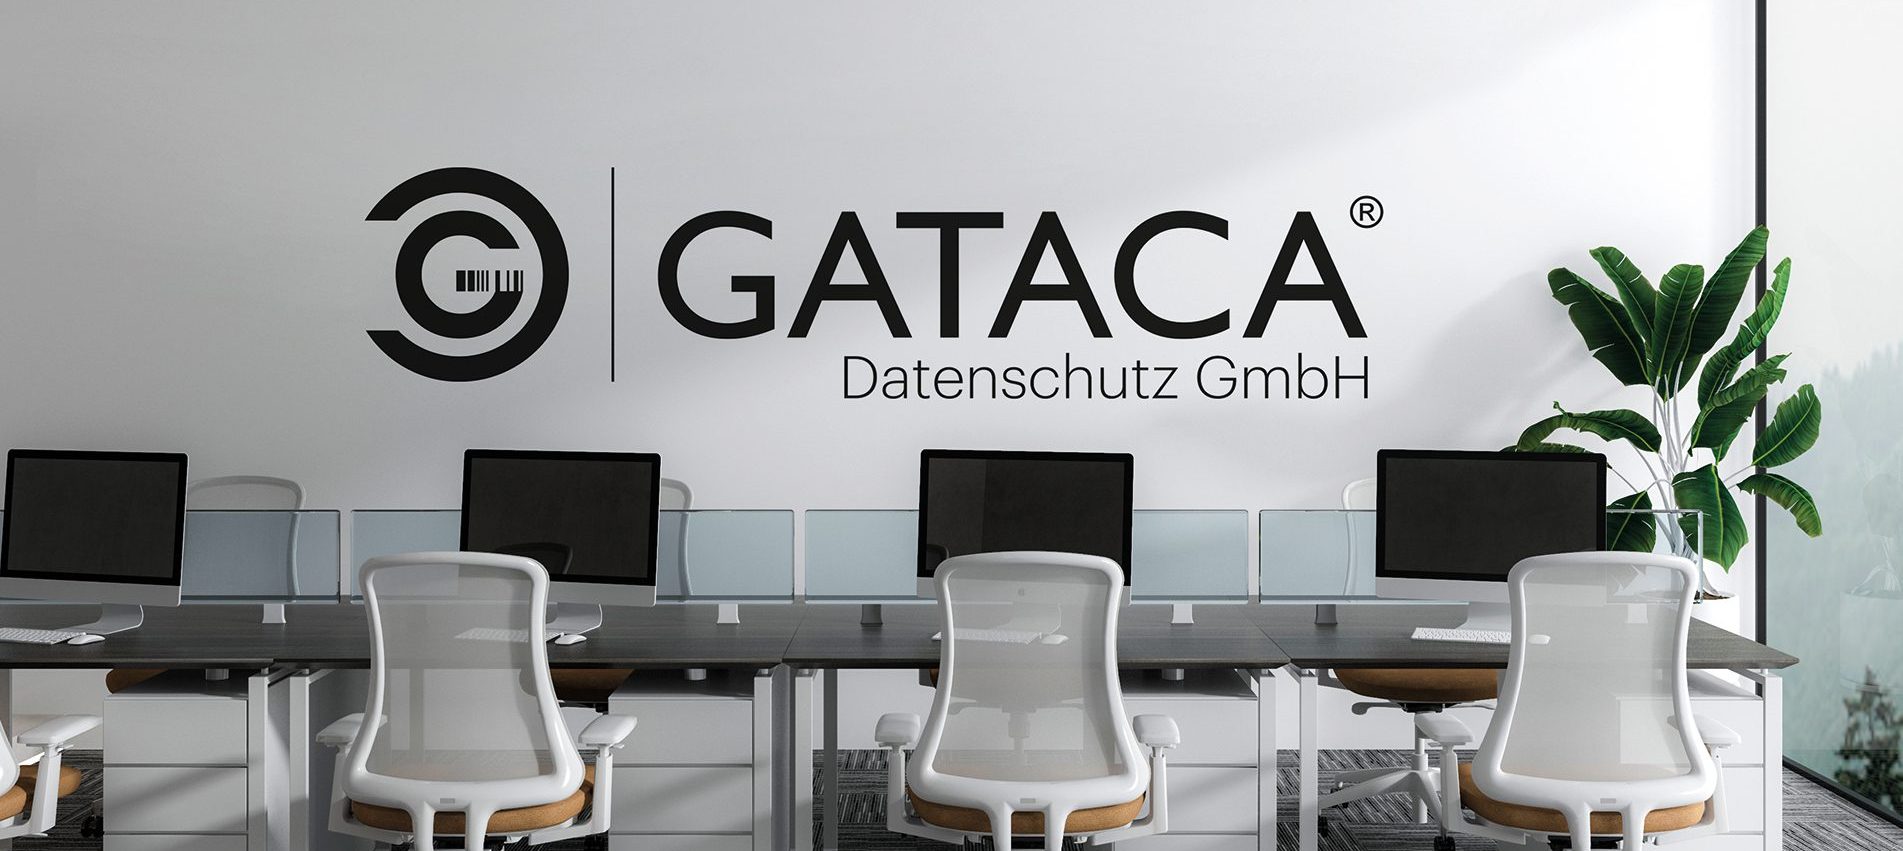 Modernes Bürp mit Glas und Pflanzen. Wand Bedruckt mit GATACA Datenschutz GmbH Logo